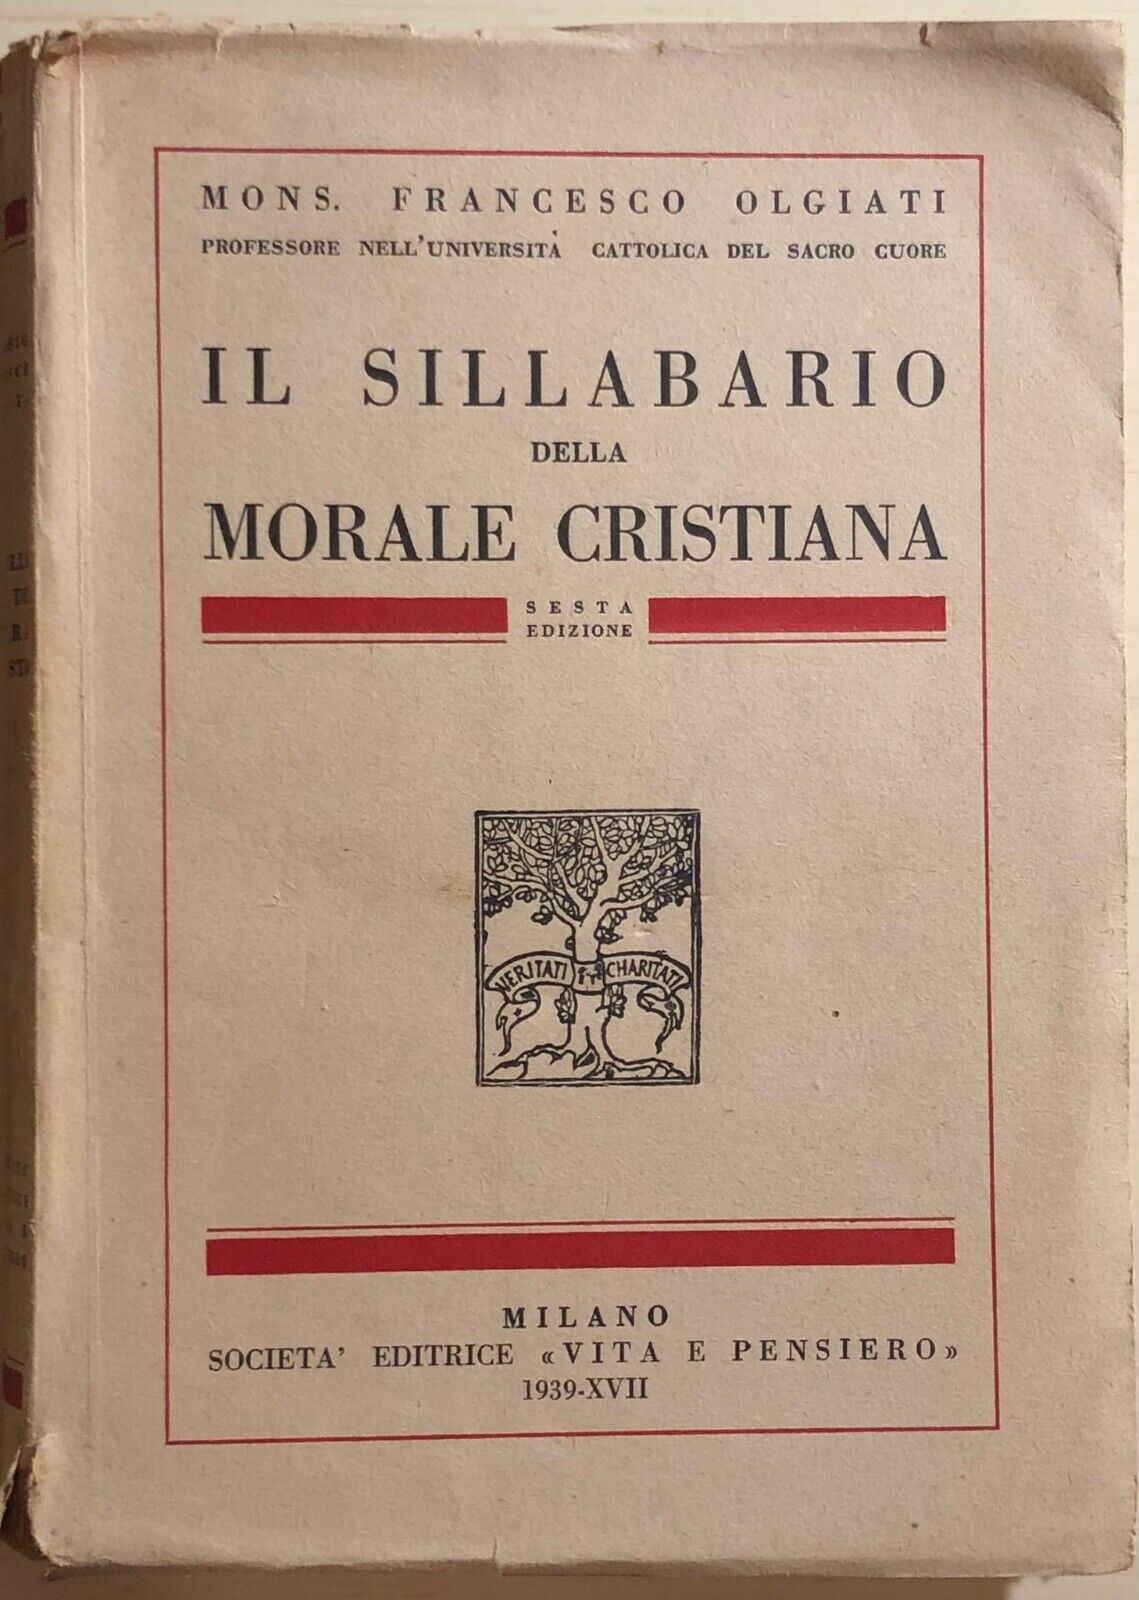 Il sillabario della morale cristiana di Mons. Francesco Olgiati, 1939, Societ? E